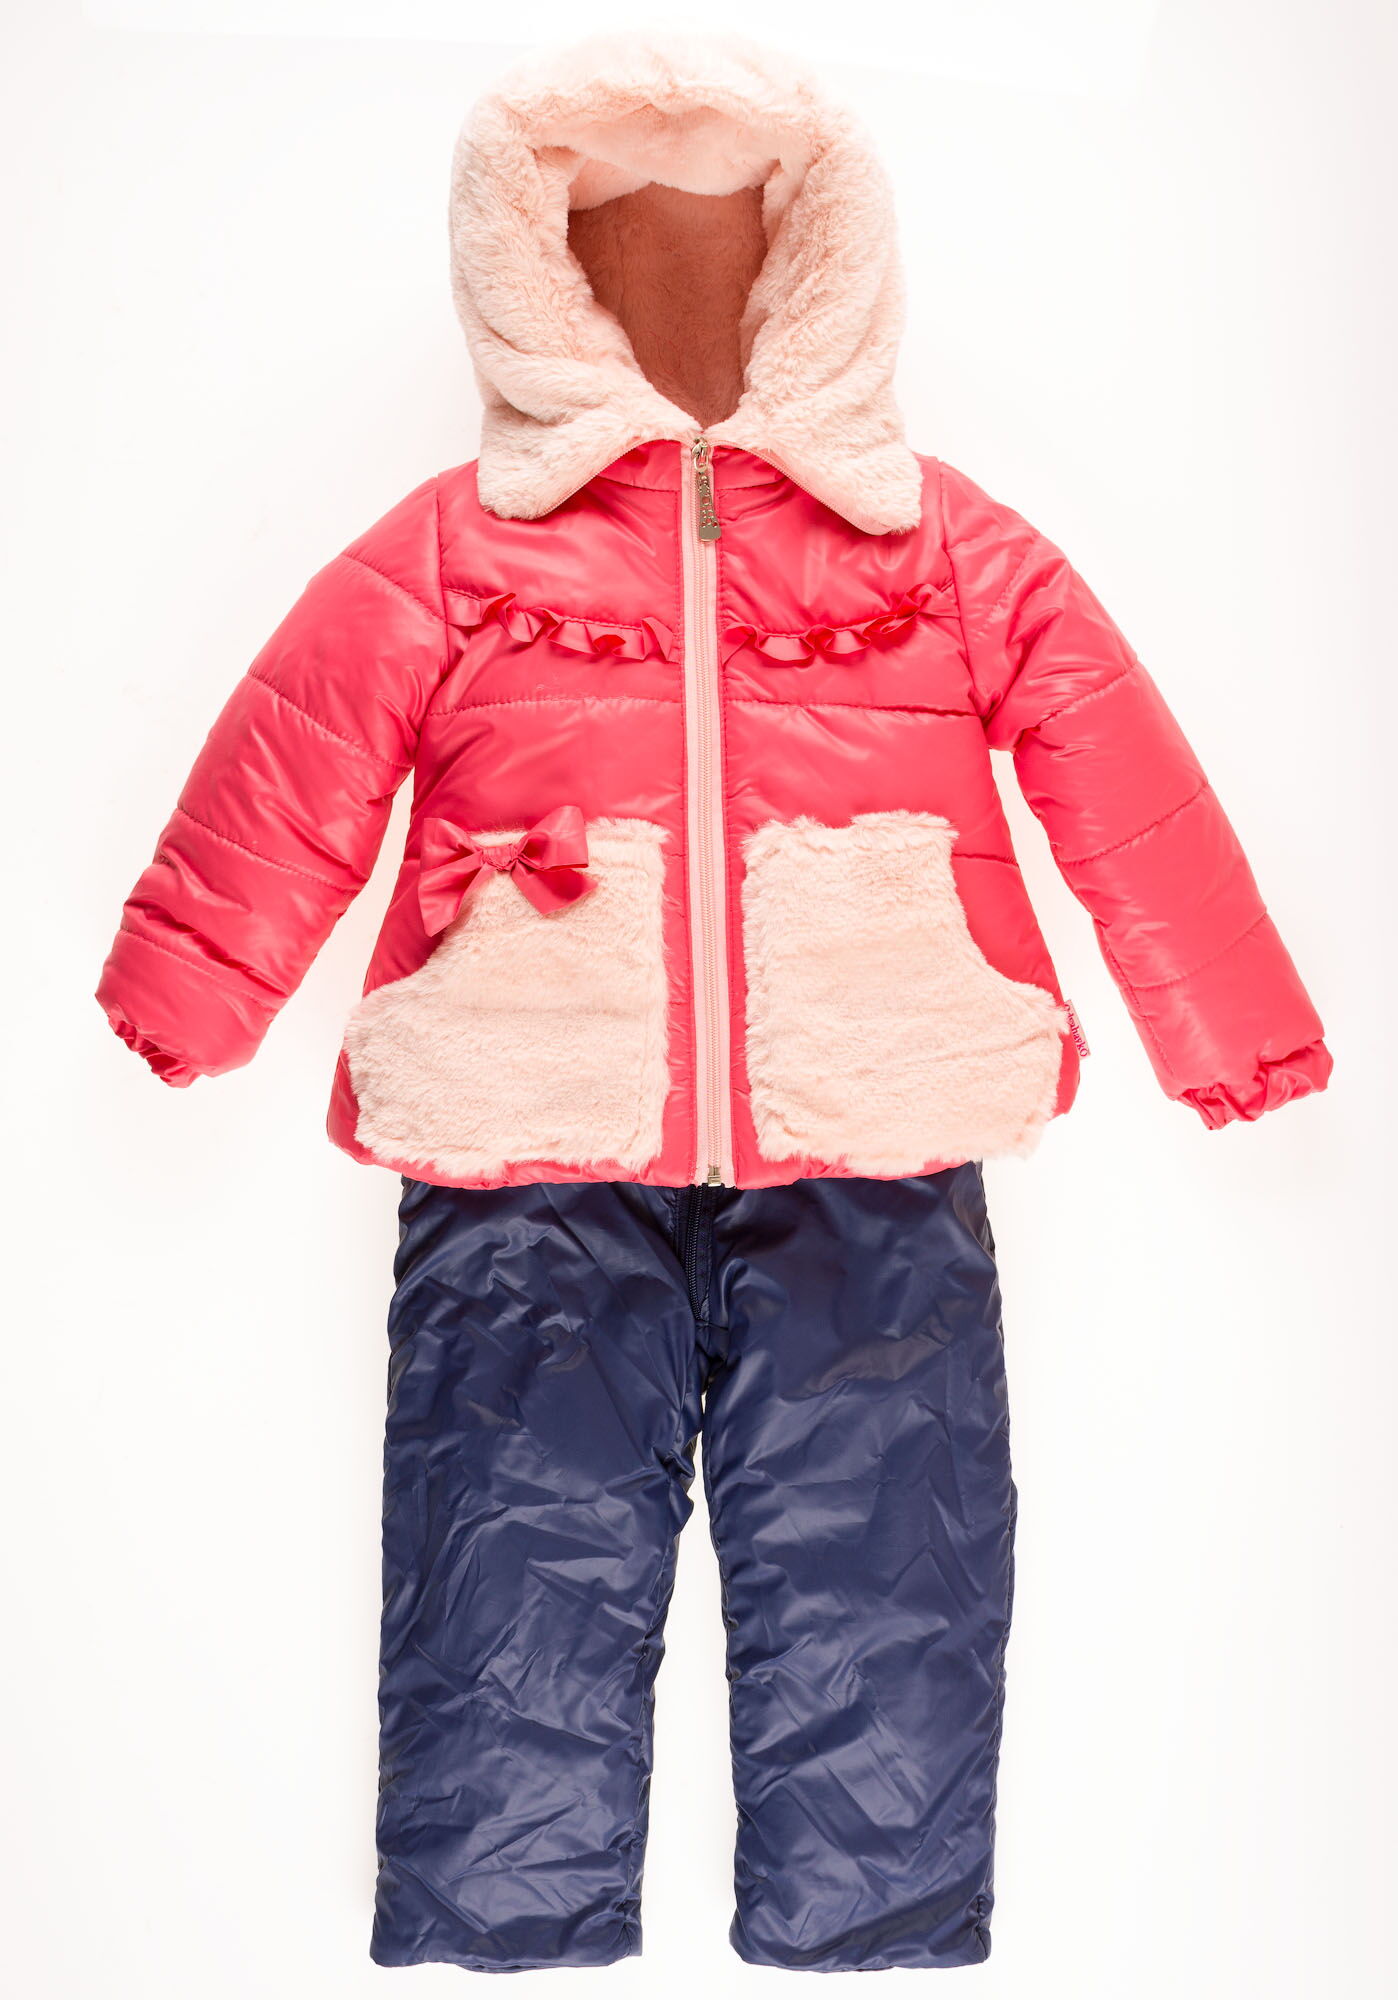 Комбинезон раздельный зимний для девочки (куртка+штаны) ОДЯГАЙКО коралловый 20023/32005 - купить